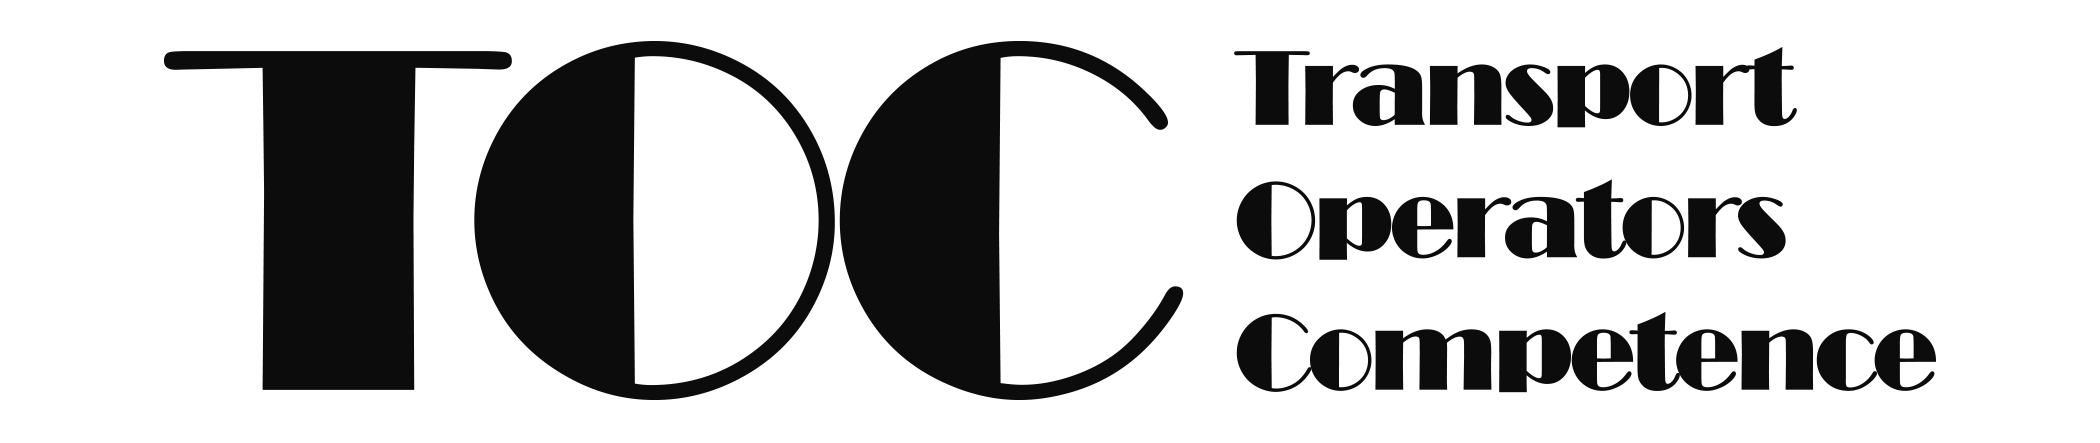 _6d396_TOC-logo.png